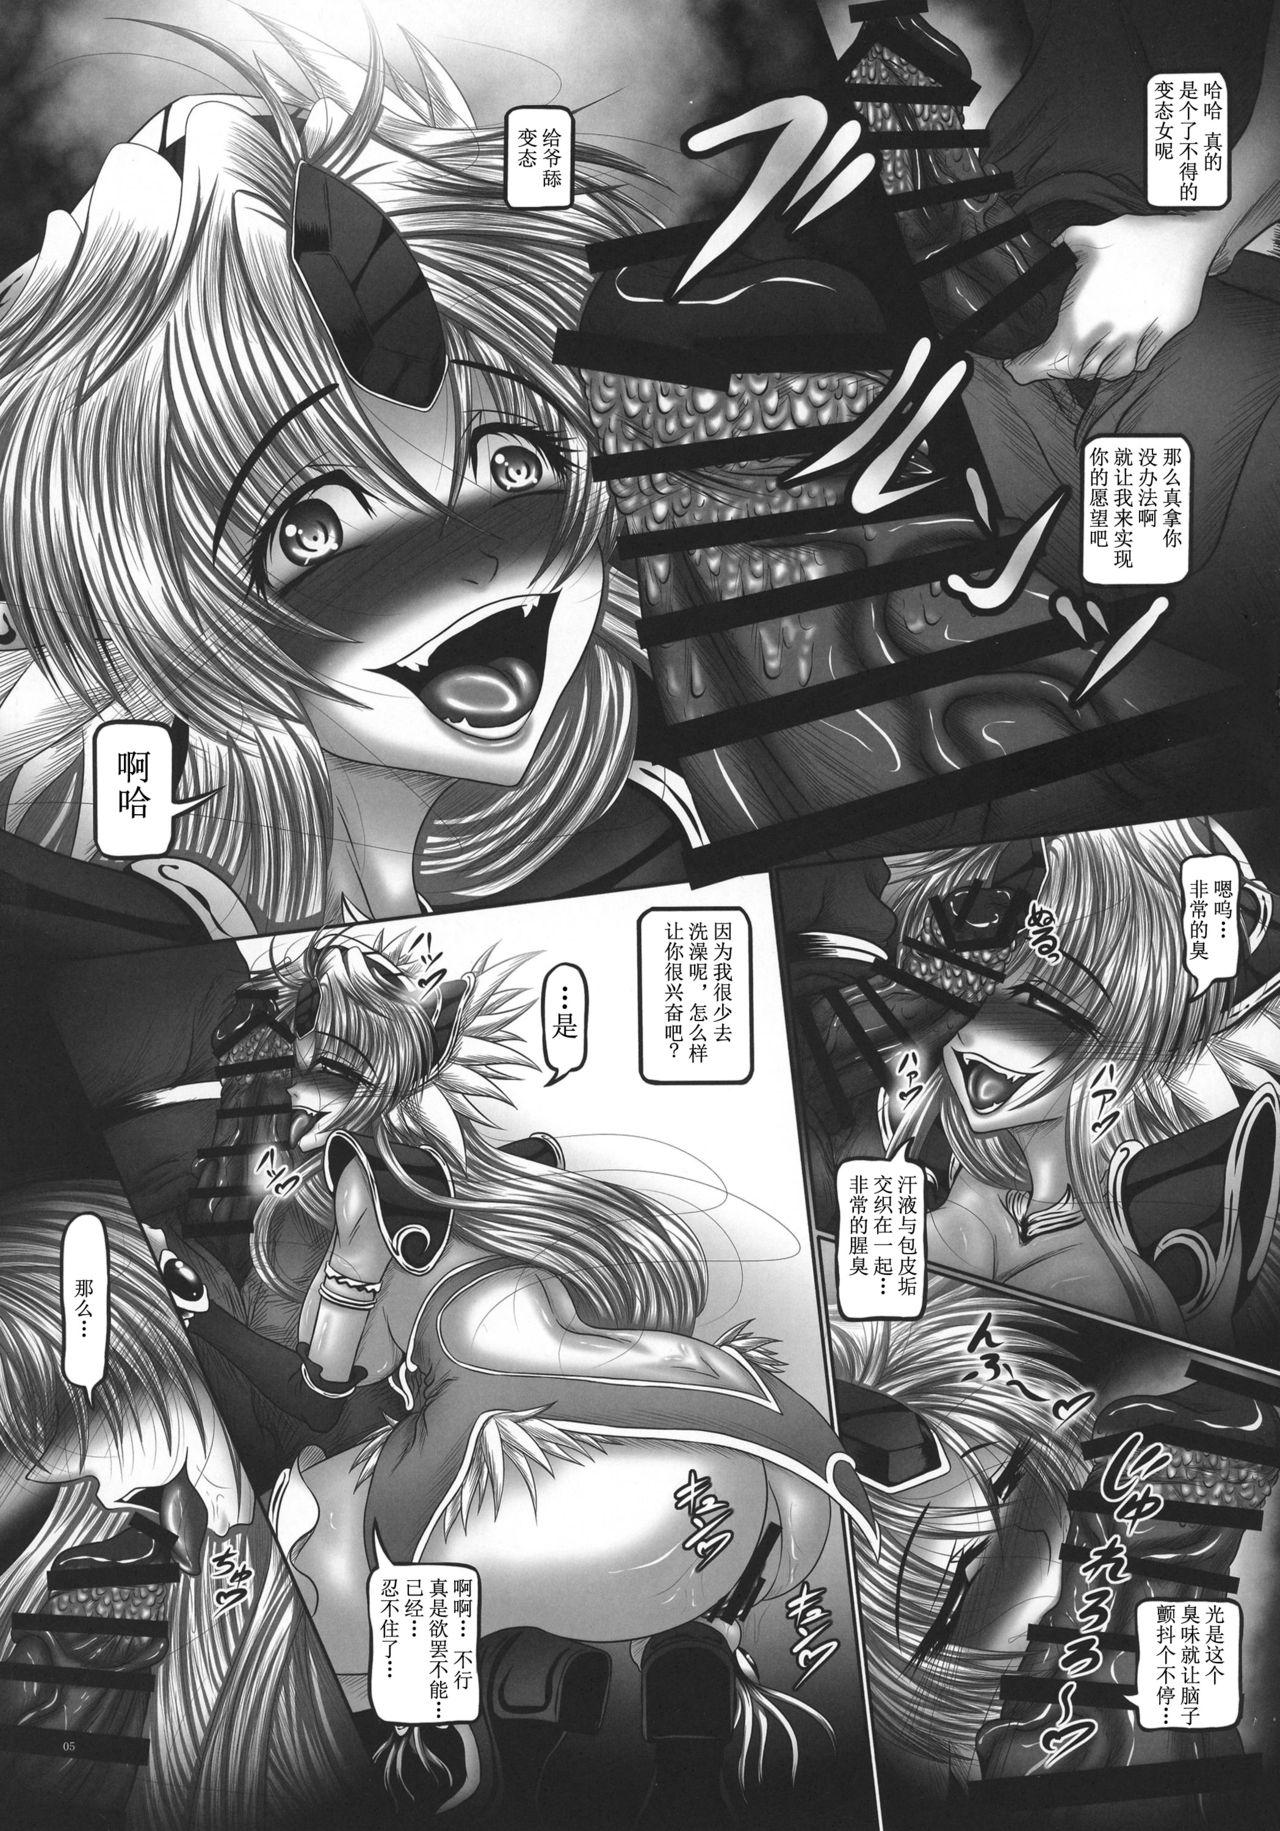 Leite Dragon' s Fall II - Seiken densetsu 3 Seiken densetsu Blacksonboys - Page 5